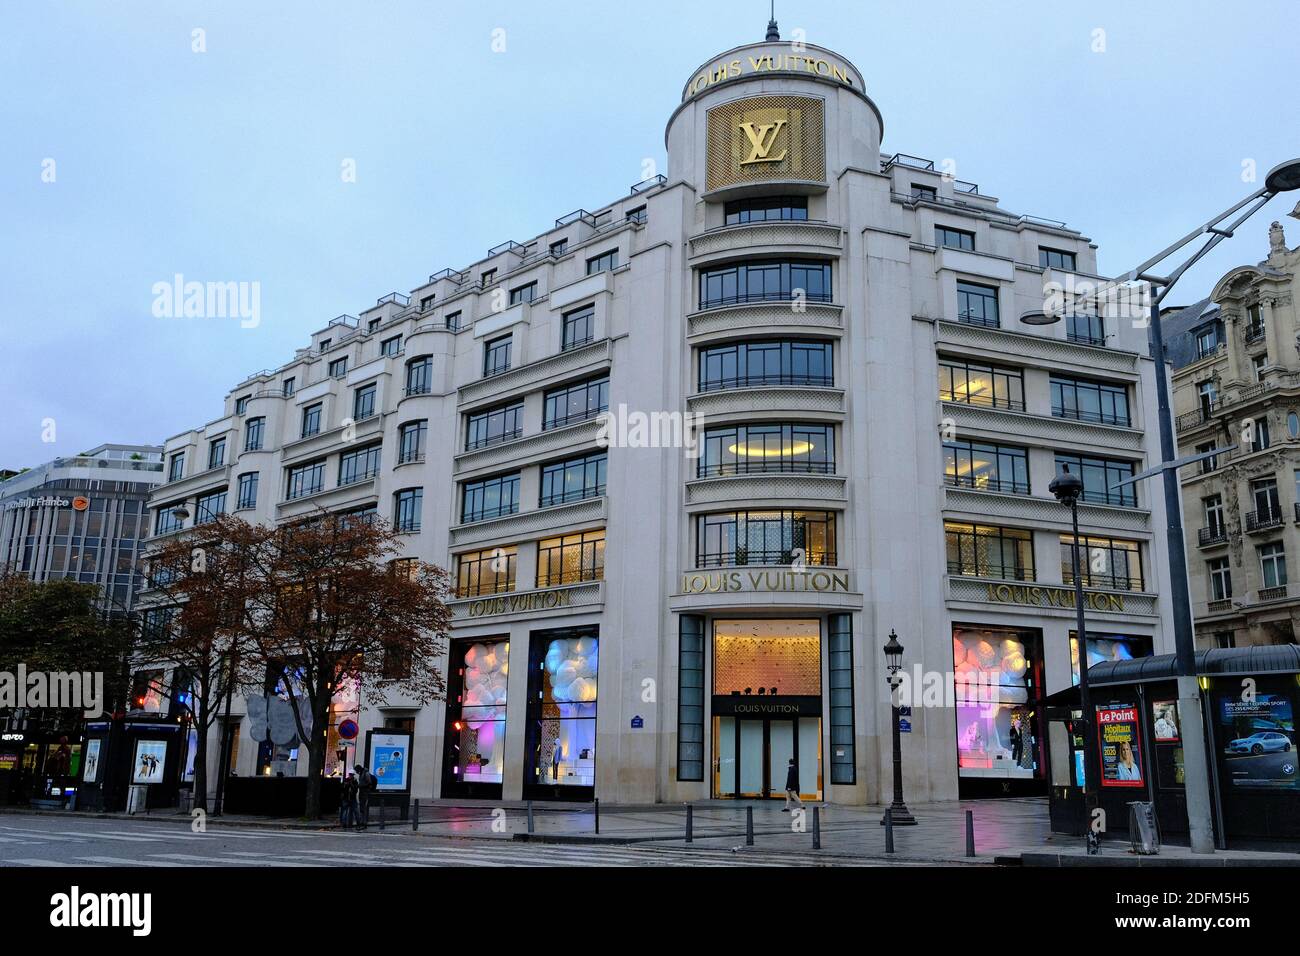 France, Paris , Louis Vuitton store on Avenue des Champs Elysees Stock  Photo - Alamy